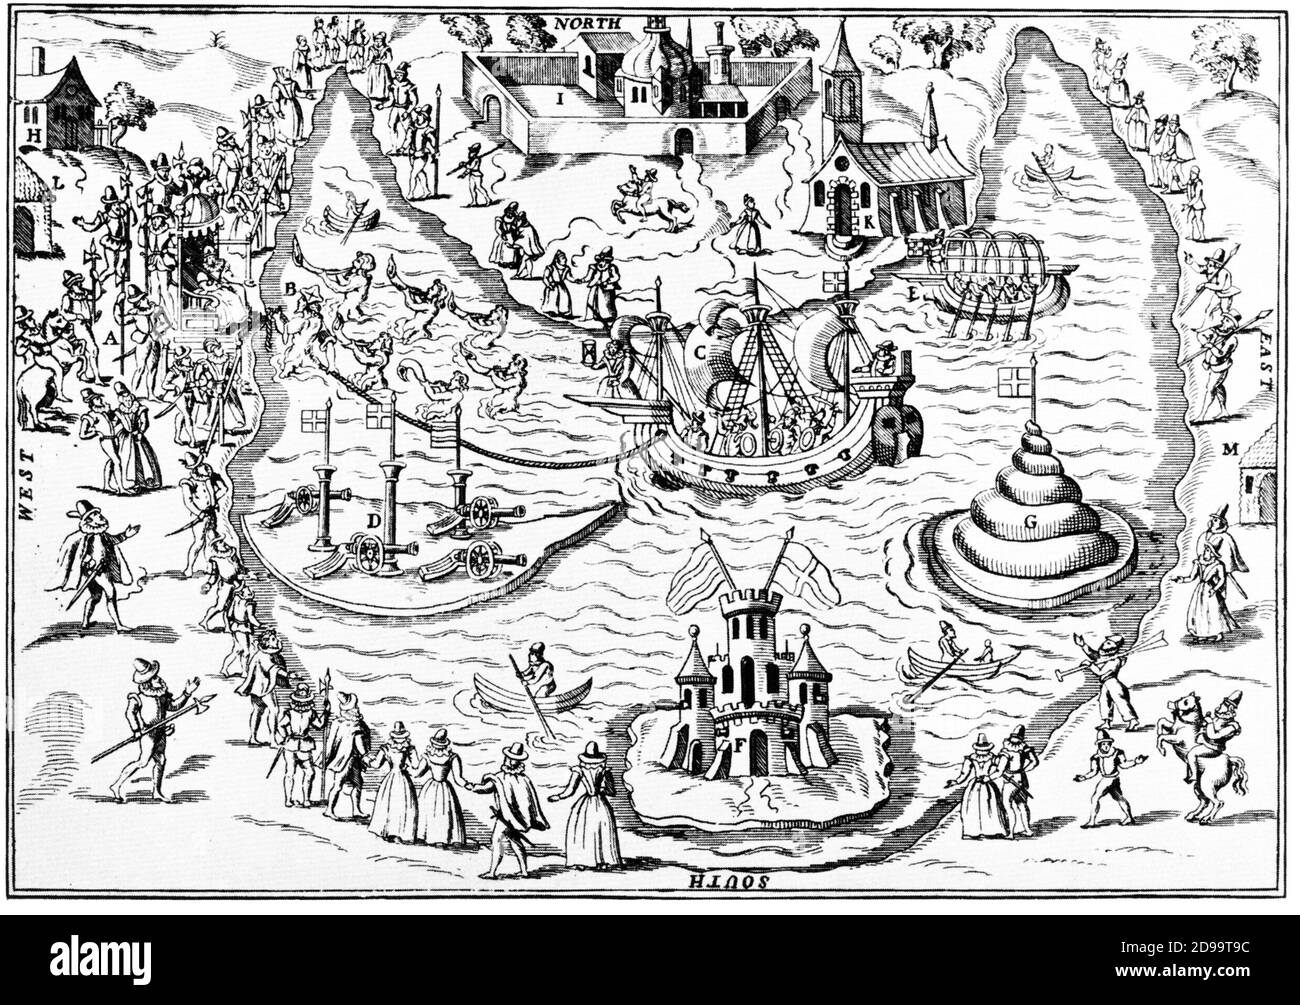 1591 , GRANDE-BRETAGNE : le divertissement d'ELIZABETH I ( 1533 - 1603 ) , reine d'Angleterre de 1558 à 1603 , fille du roi Henri VIII et d'Anne Bolena , gravure inspirée par WILLIAM SHAKESPEARE ( 1564 - 1616 ) Dans UN RÊVE DE LA NUIT D'ÉTÉ - COMMEDIOGRAFO - écrivain - poeta - poète - letteratura - littérature - TEATRO - THÉÂTRE - festa - divertissement - jouer - recita - rappresentazione teatrale - regina ELISABETTA - battaglia navale - bataille navale - reali - royalties --- Archivio GBB Banque D'Images